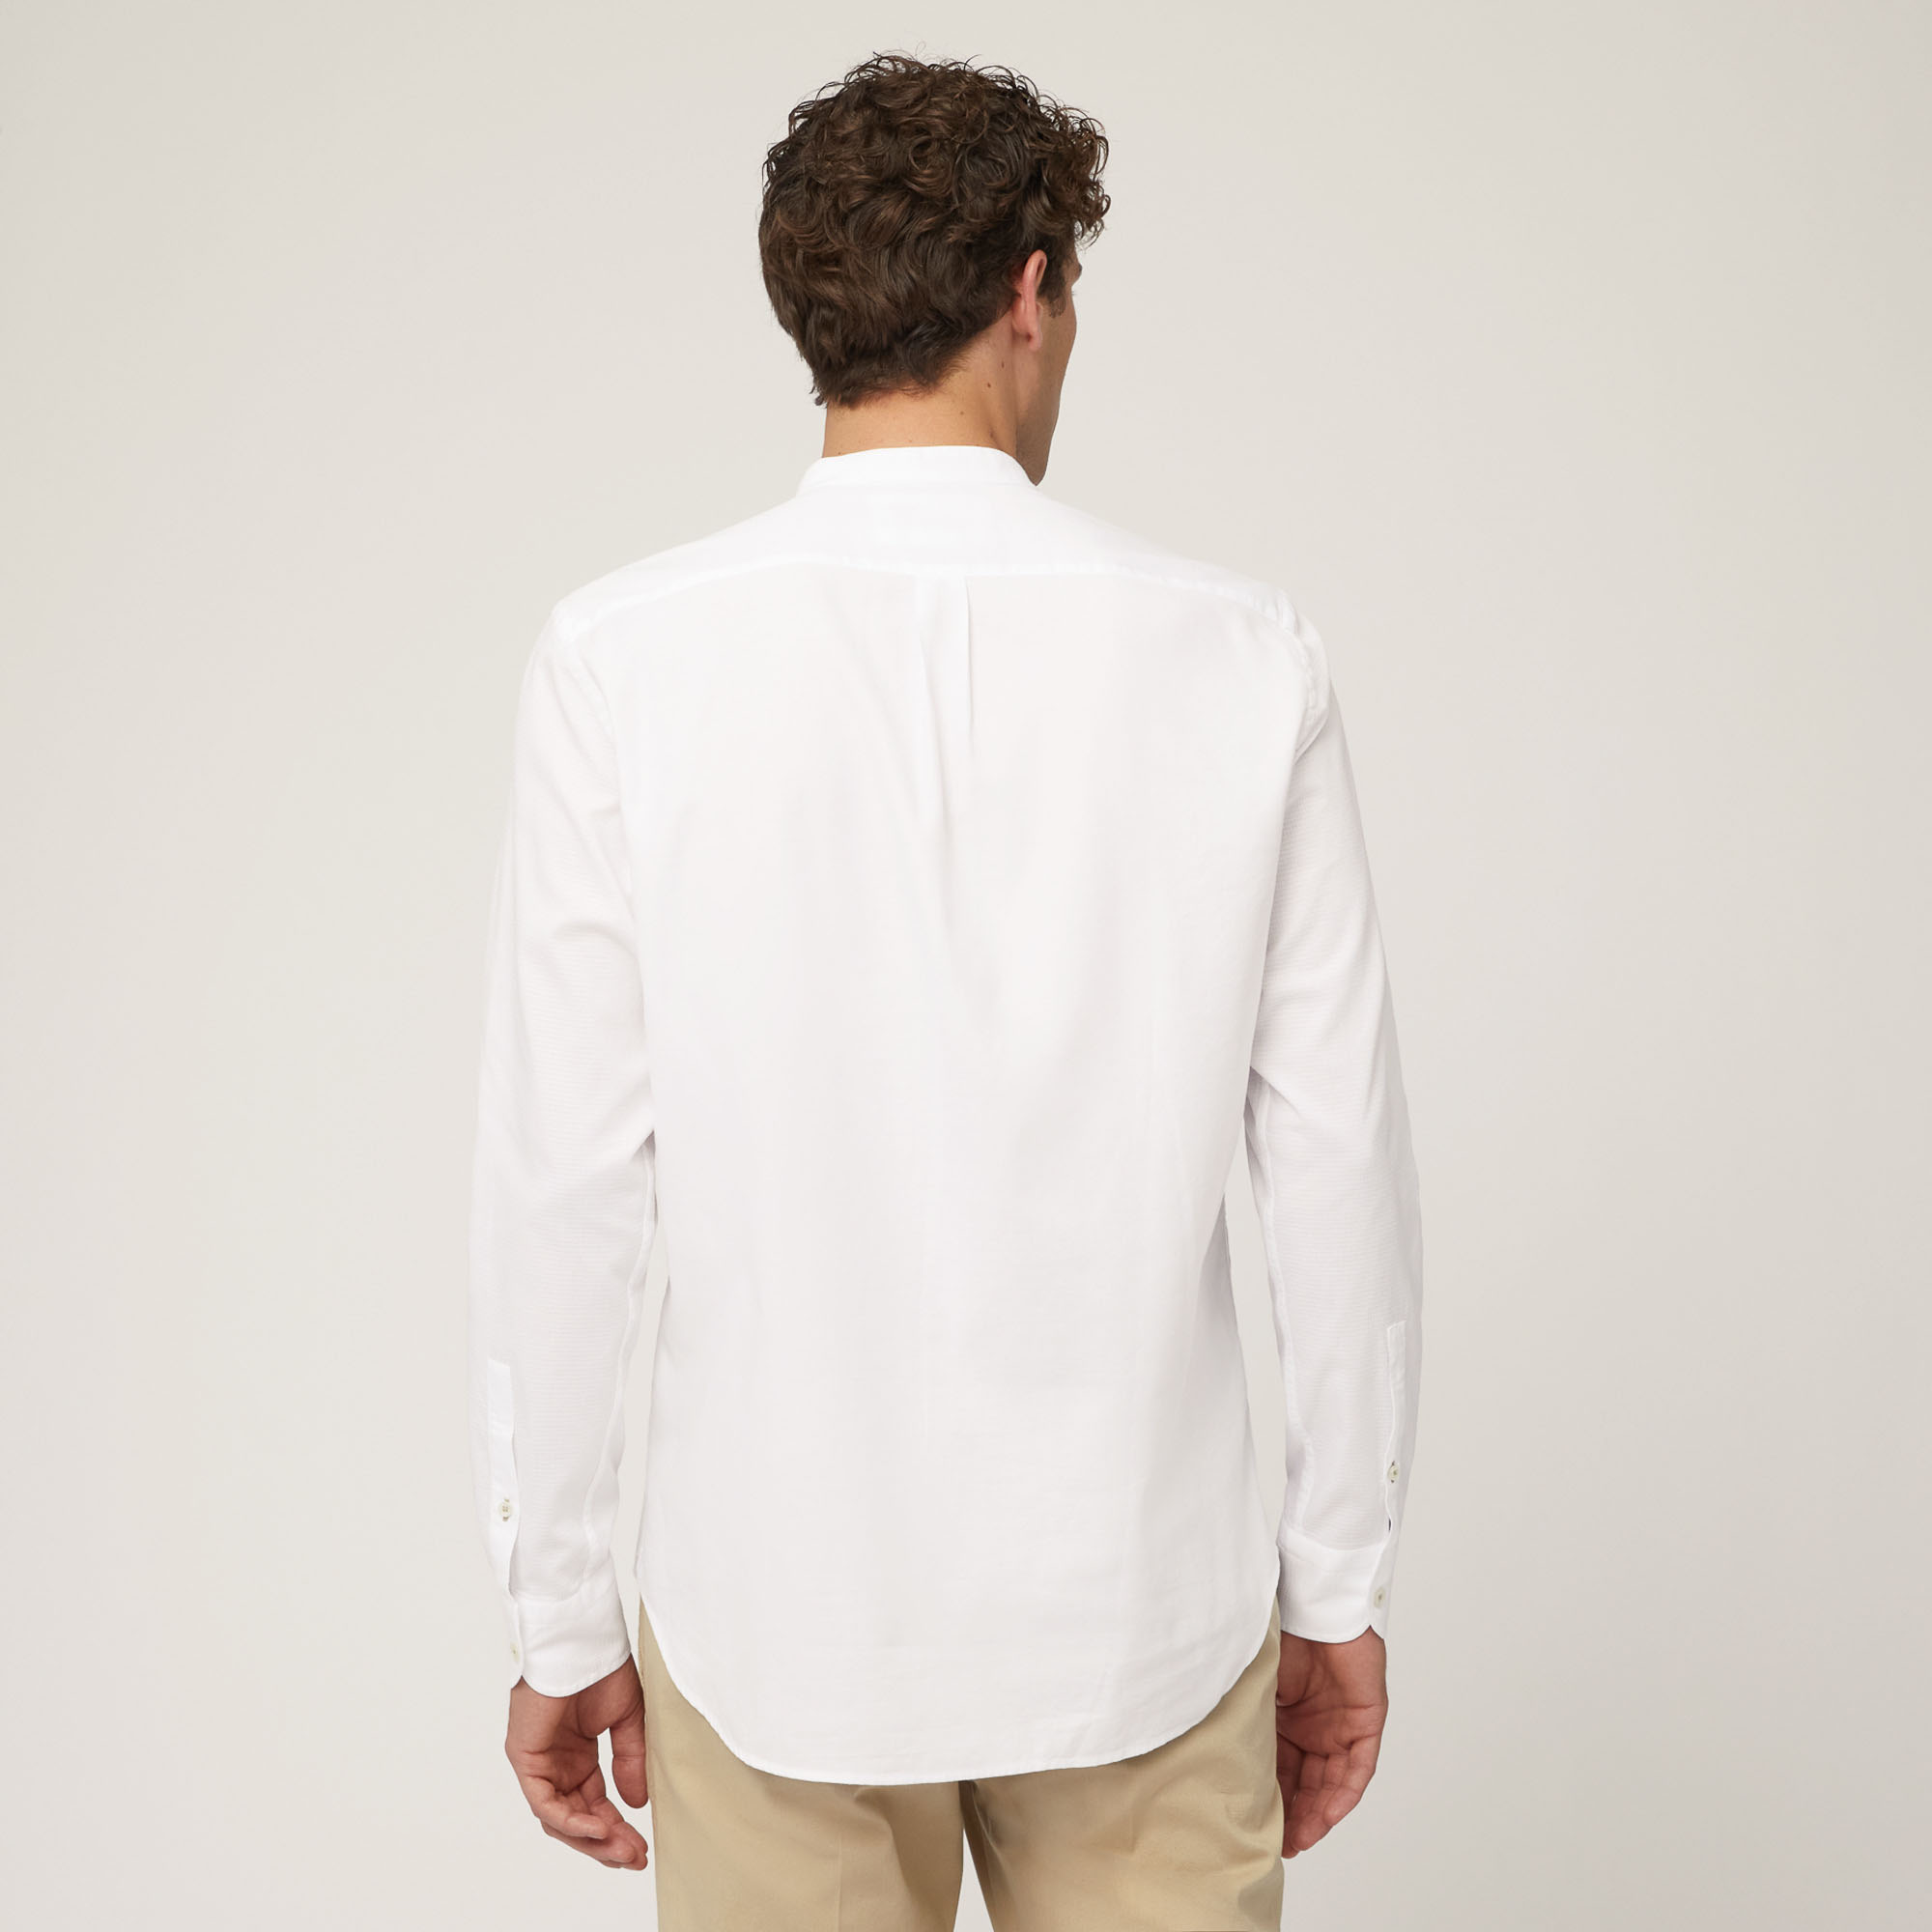 Camicia In Cotone Armaturato Con Collo Alla Coreana E Taschino, Bianco, large image number 1